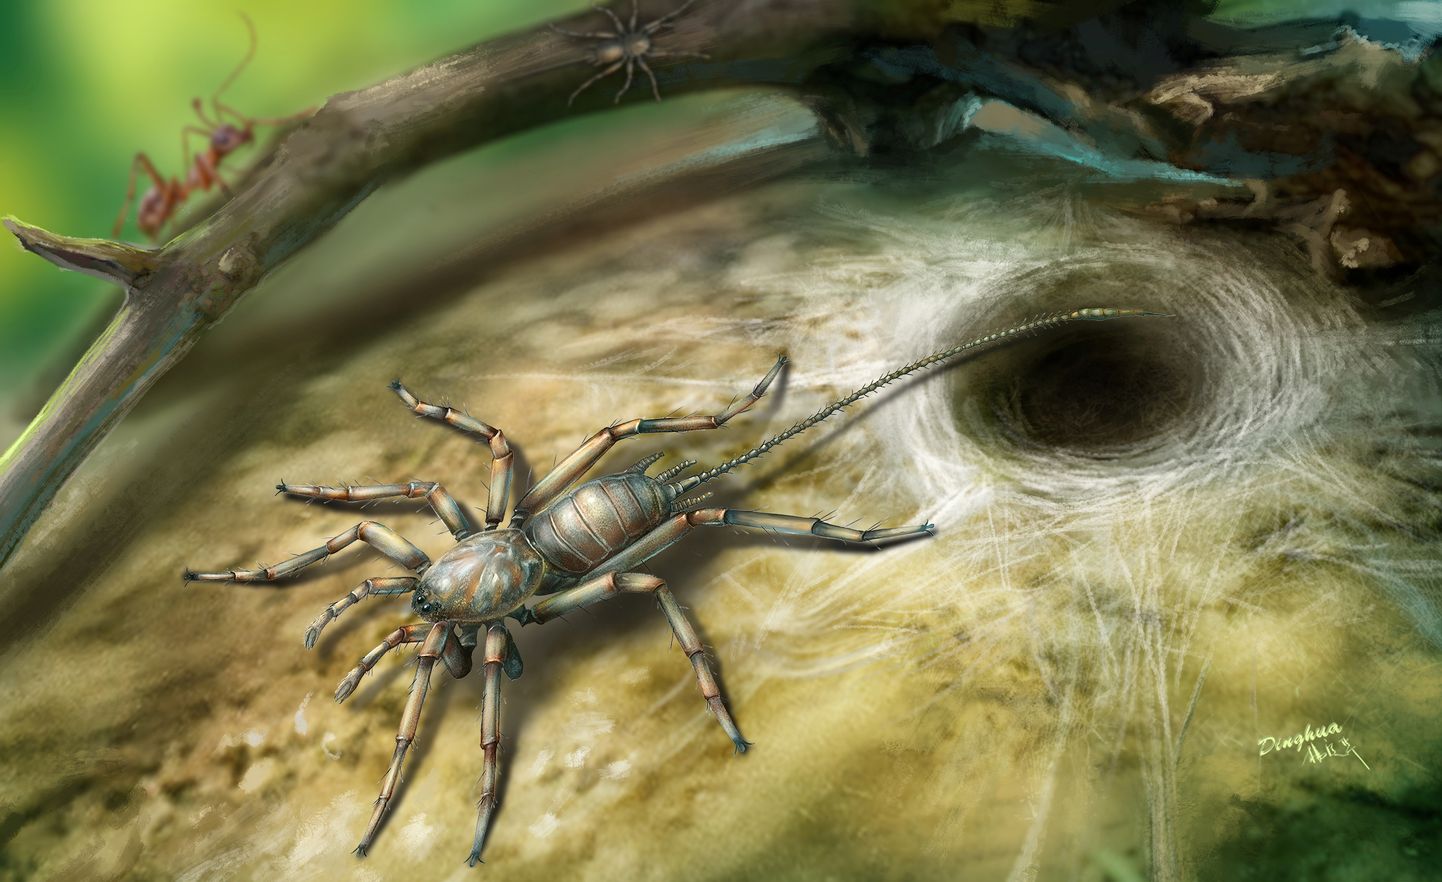 Kunstniku nägemus iidsest sabaga ämblikust